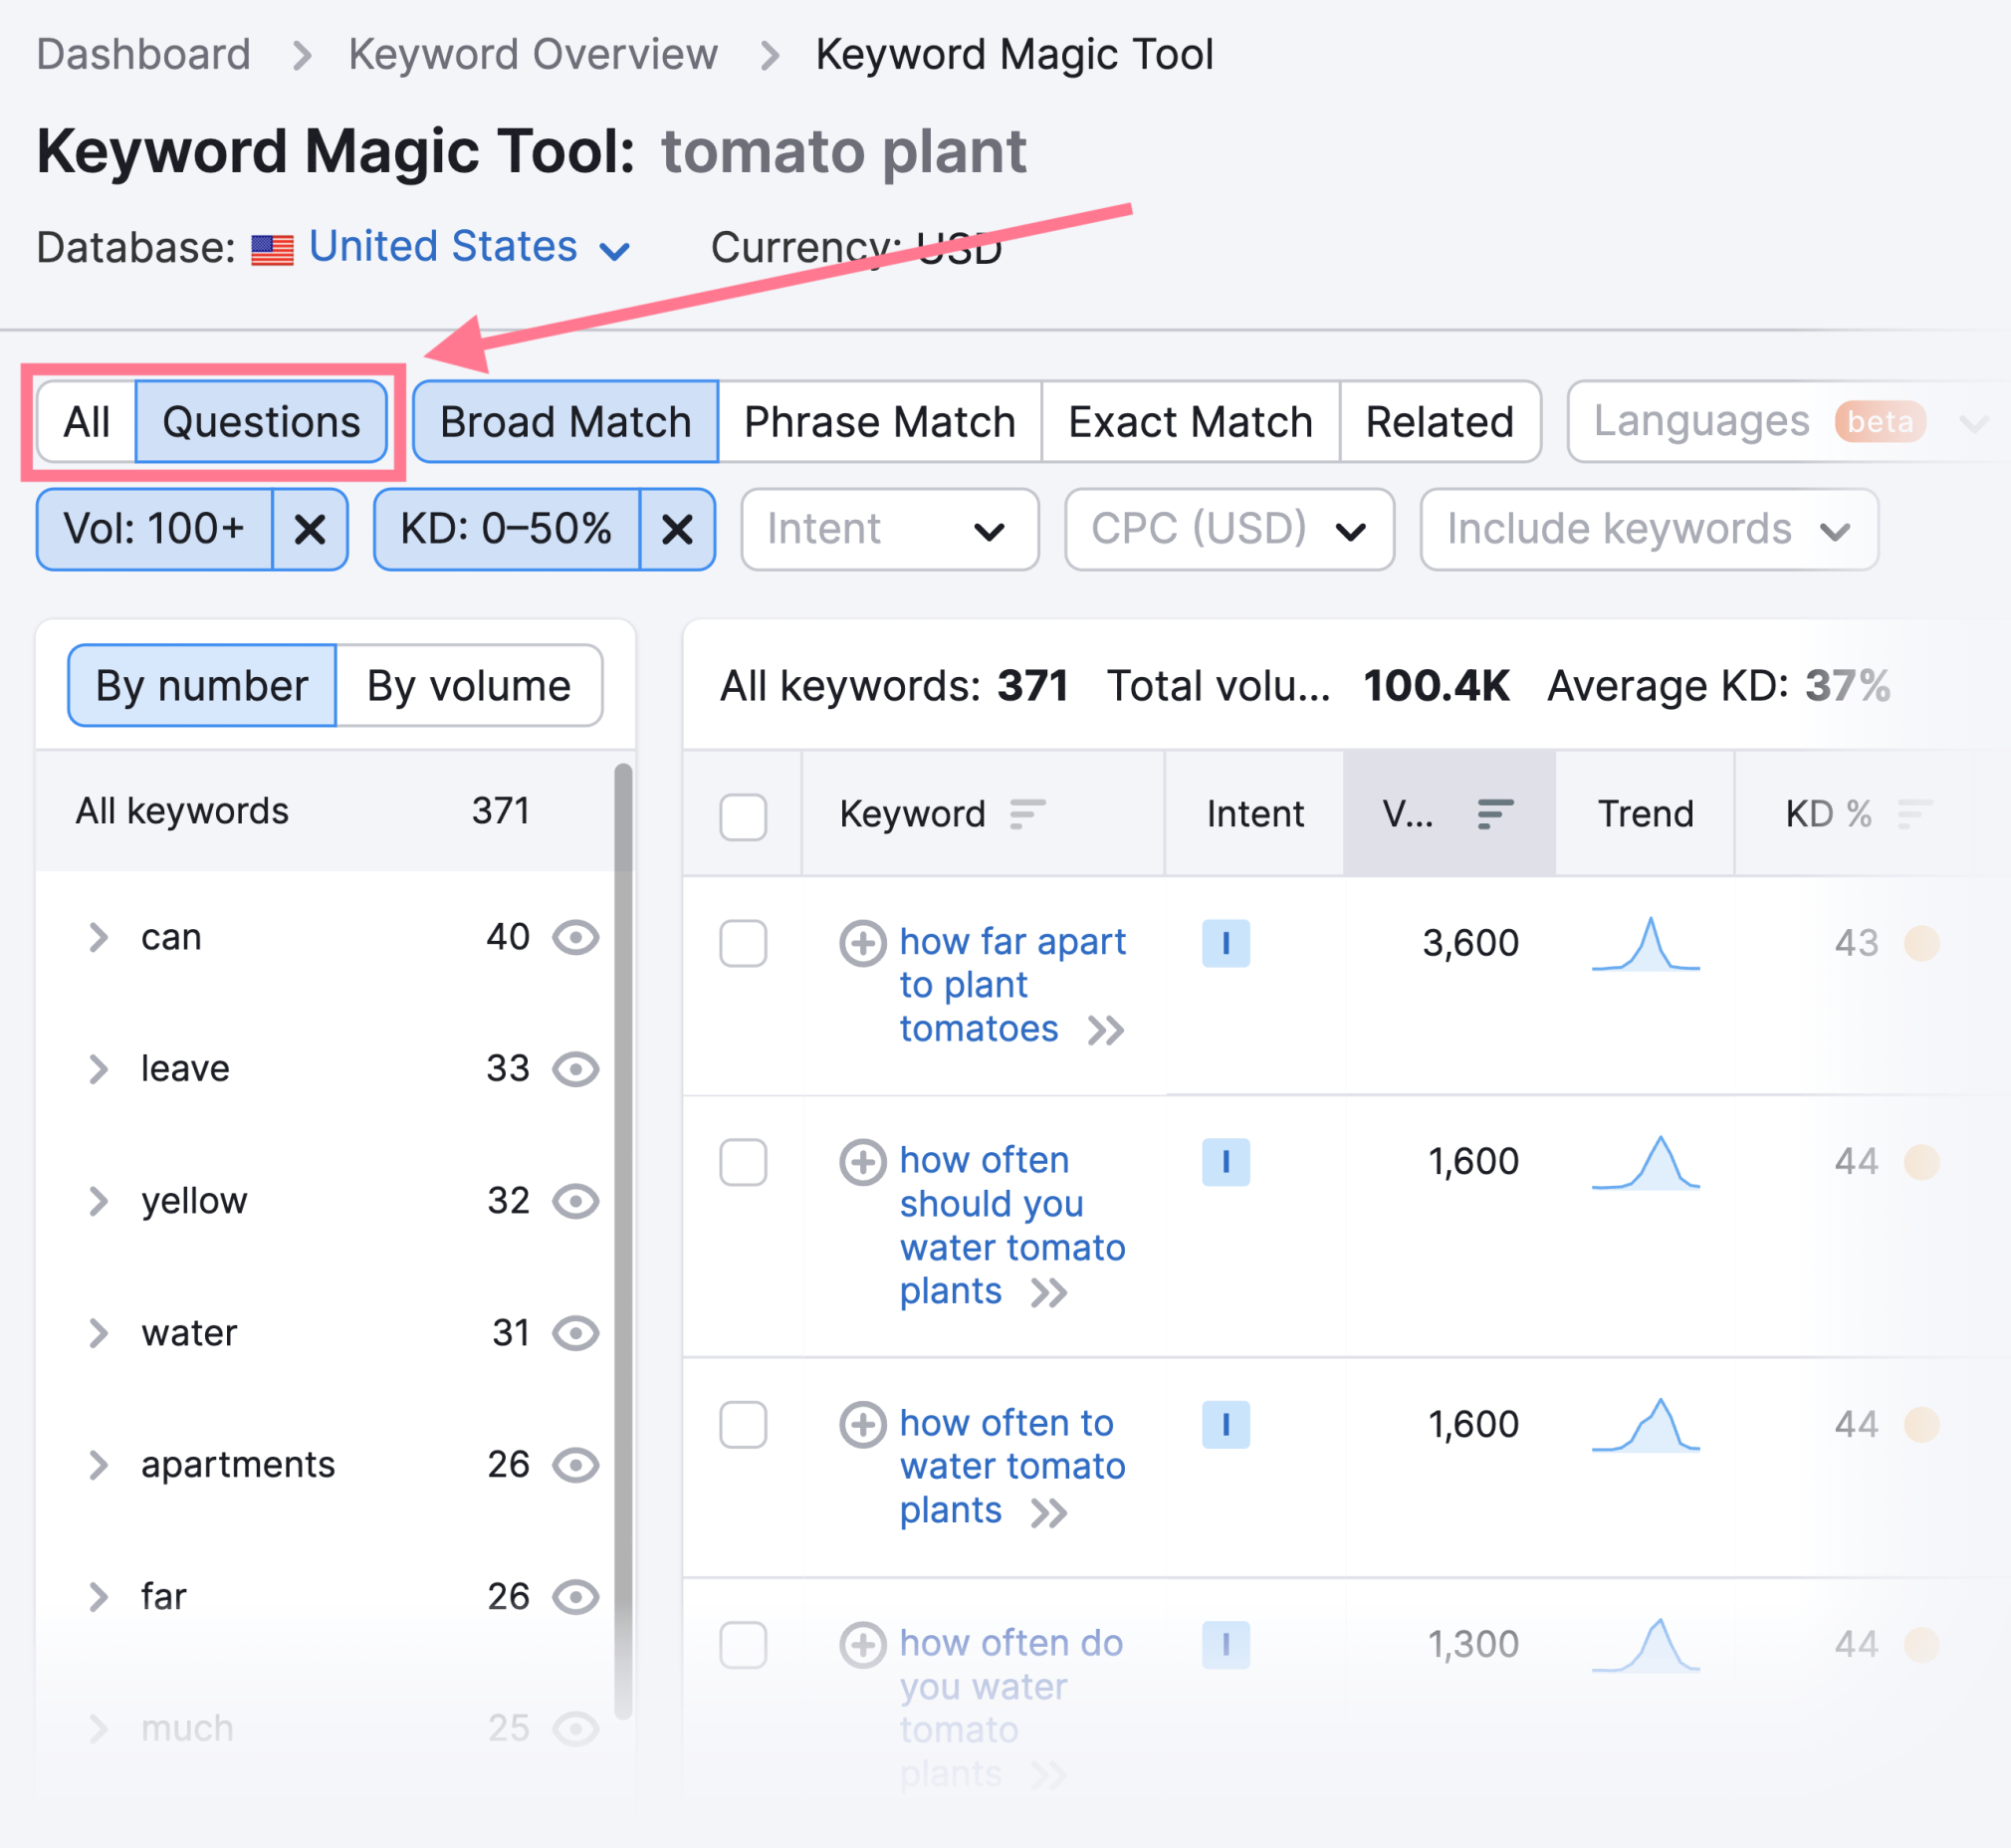 keyword magic tool question filter